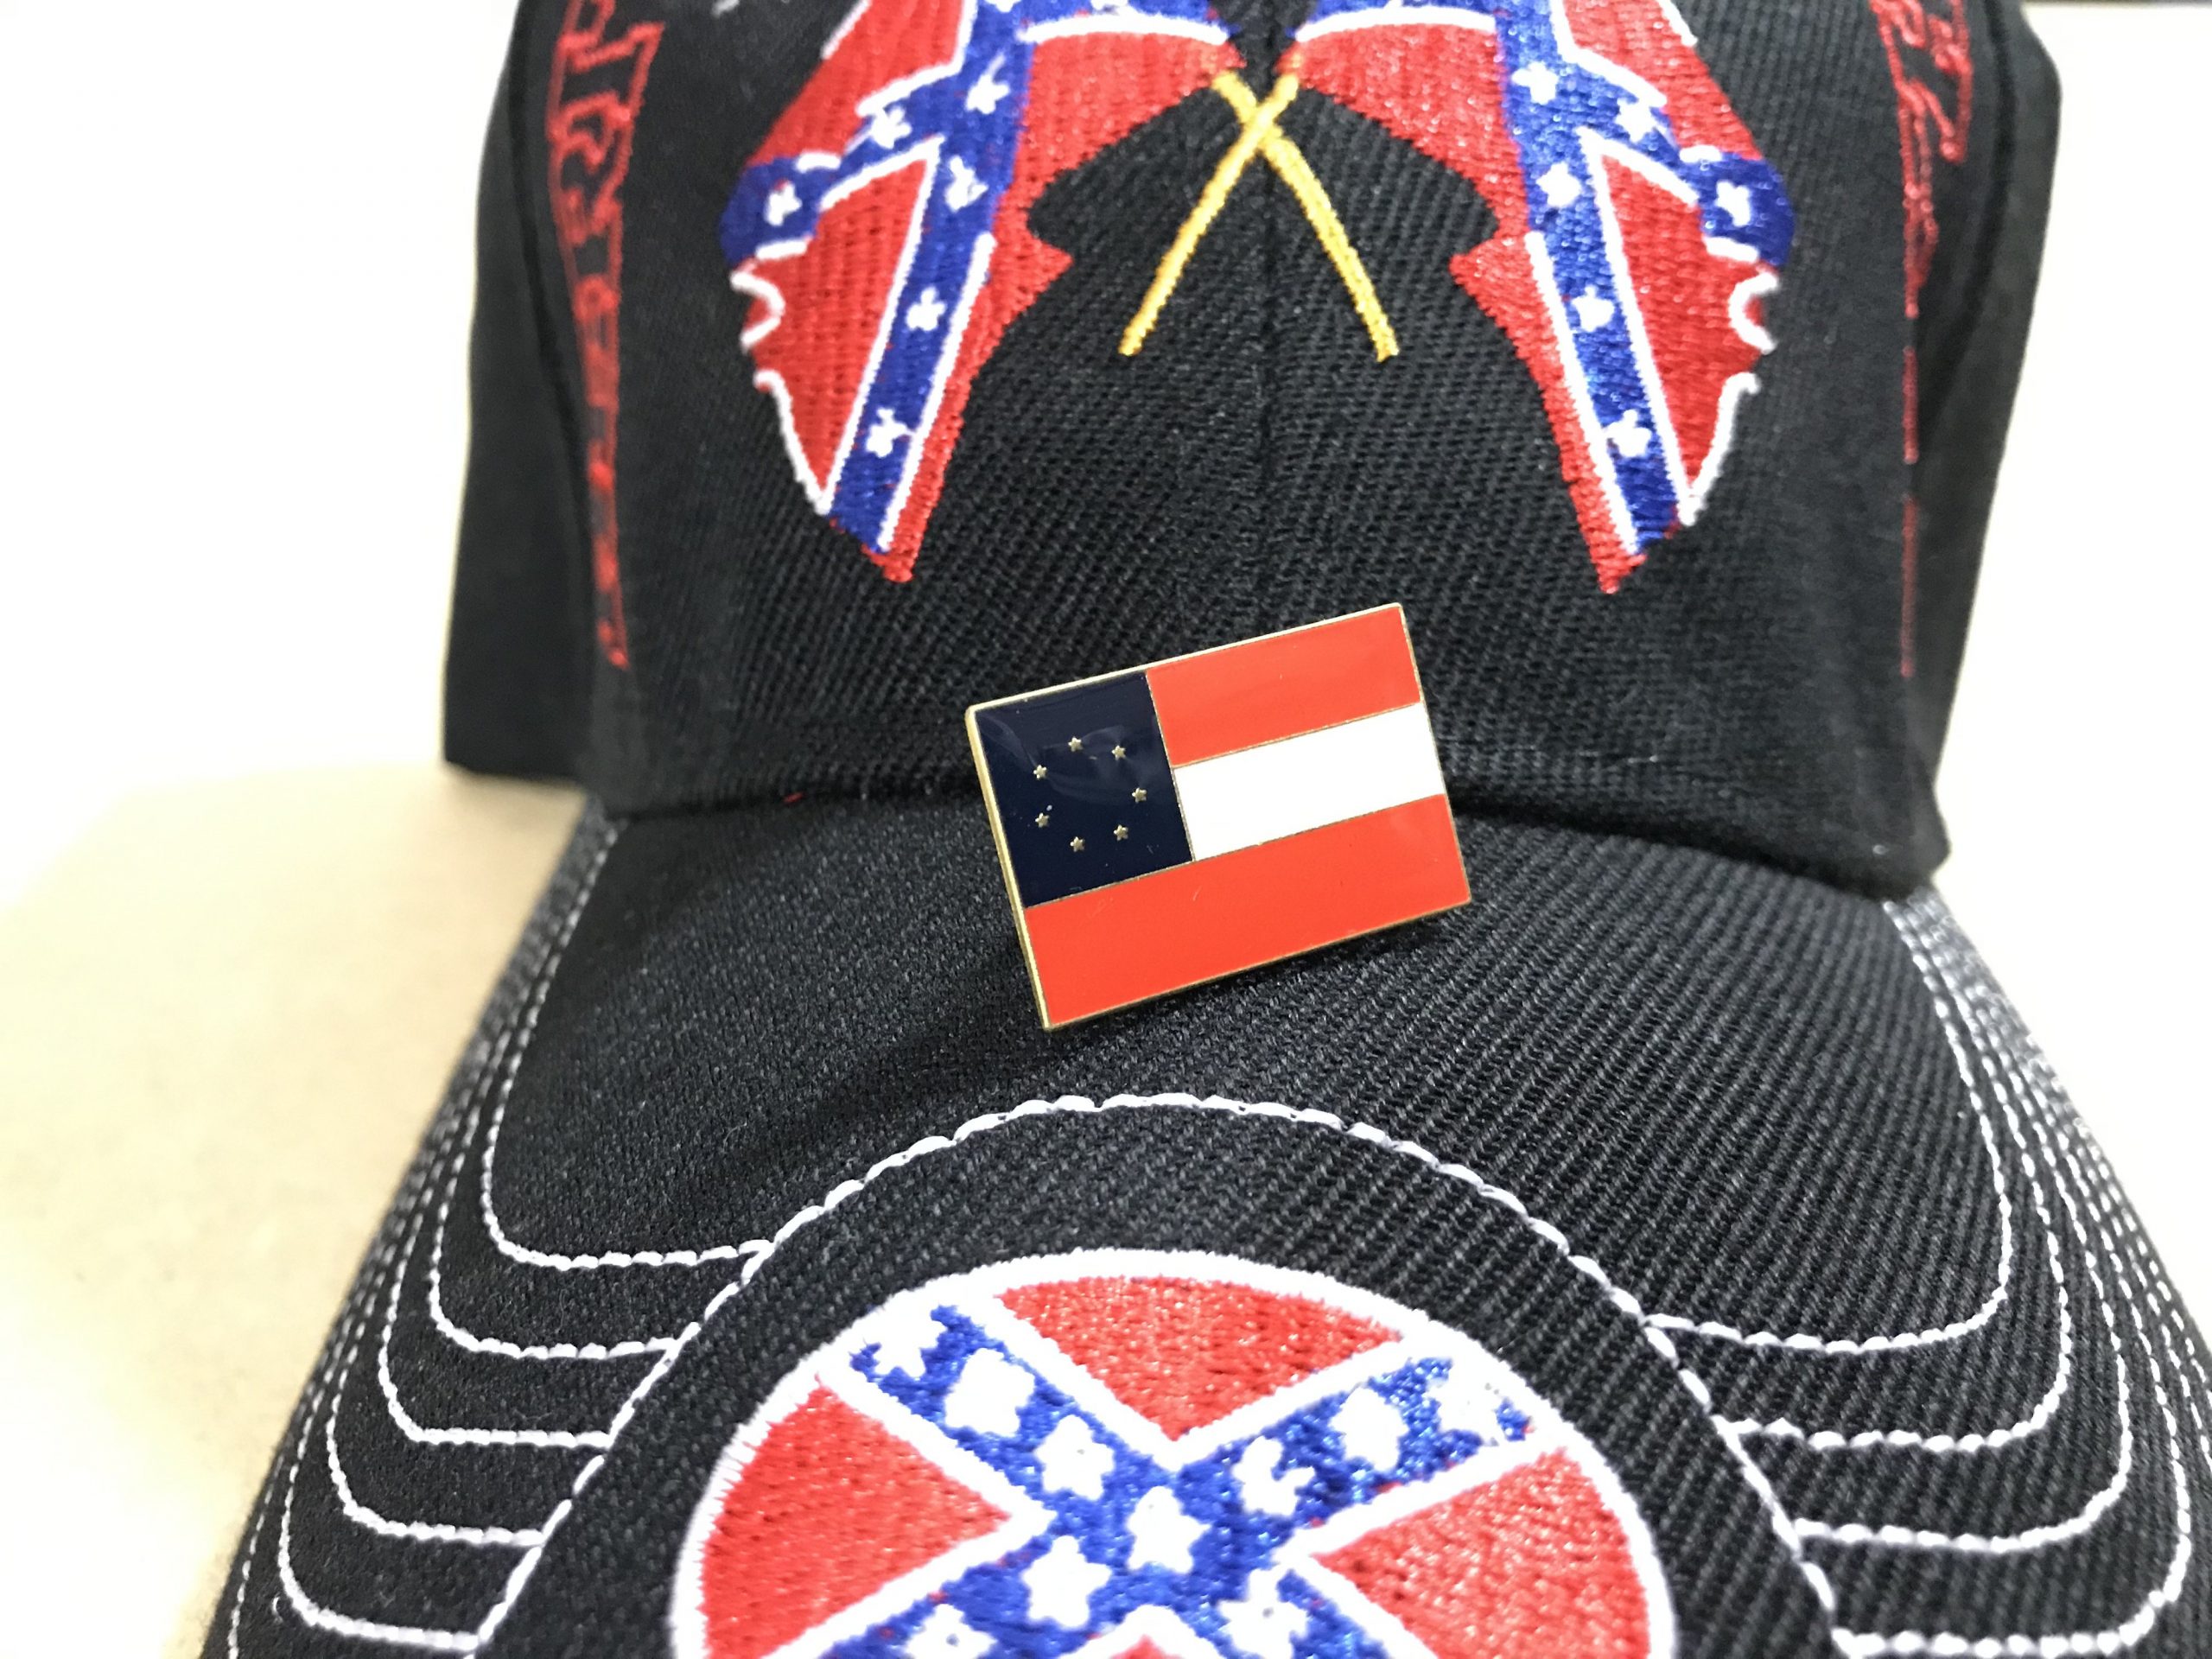 confederate flag hat pins